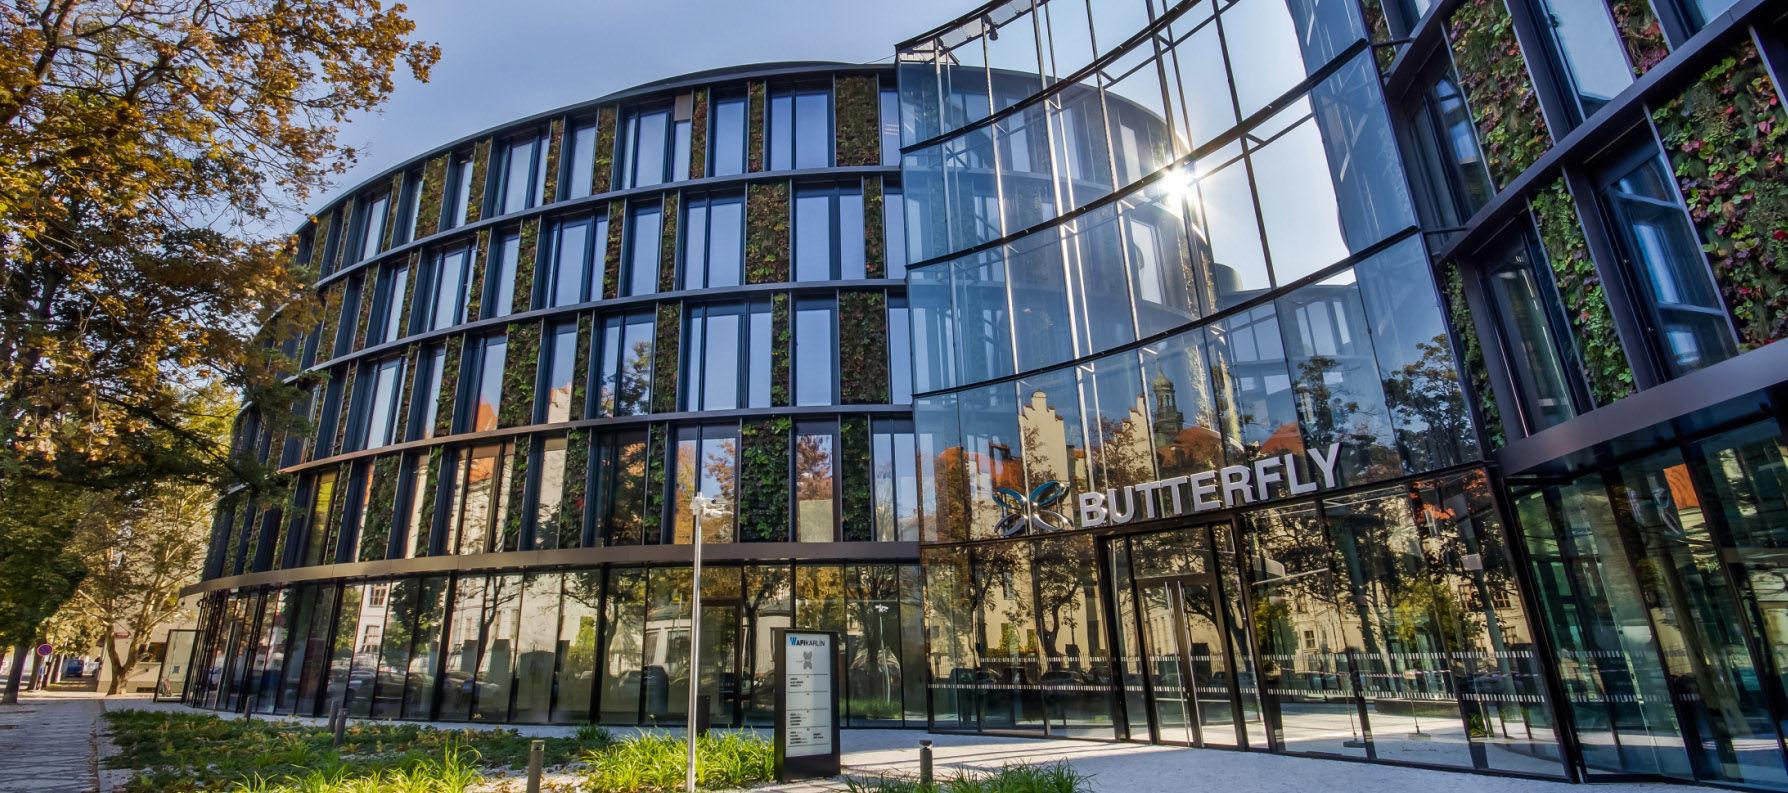 Motýlí budova od amerického architekta je největší vertikální zahradou v Česku